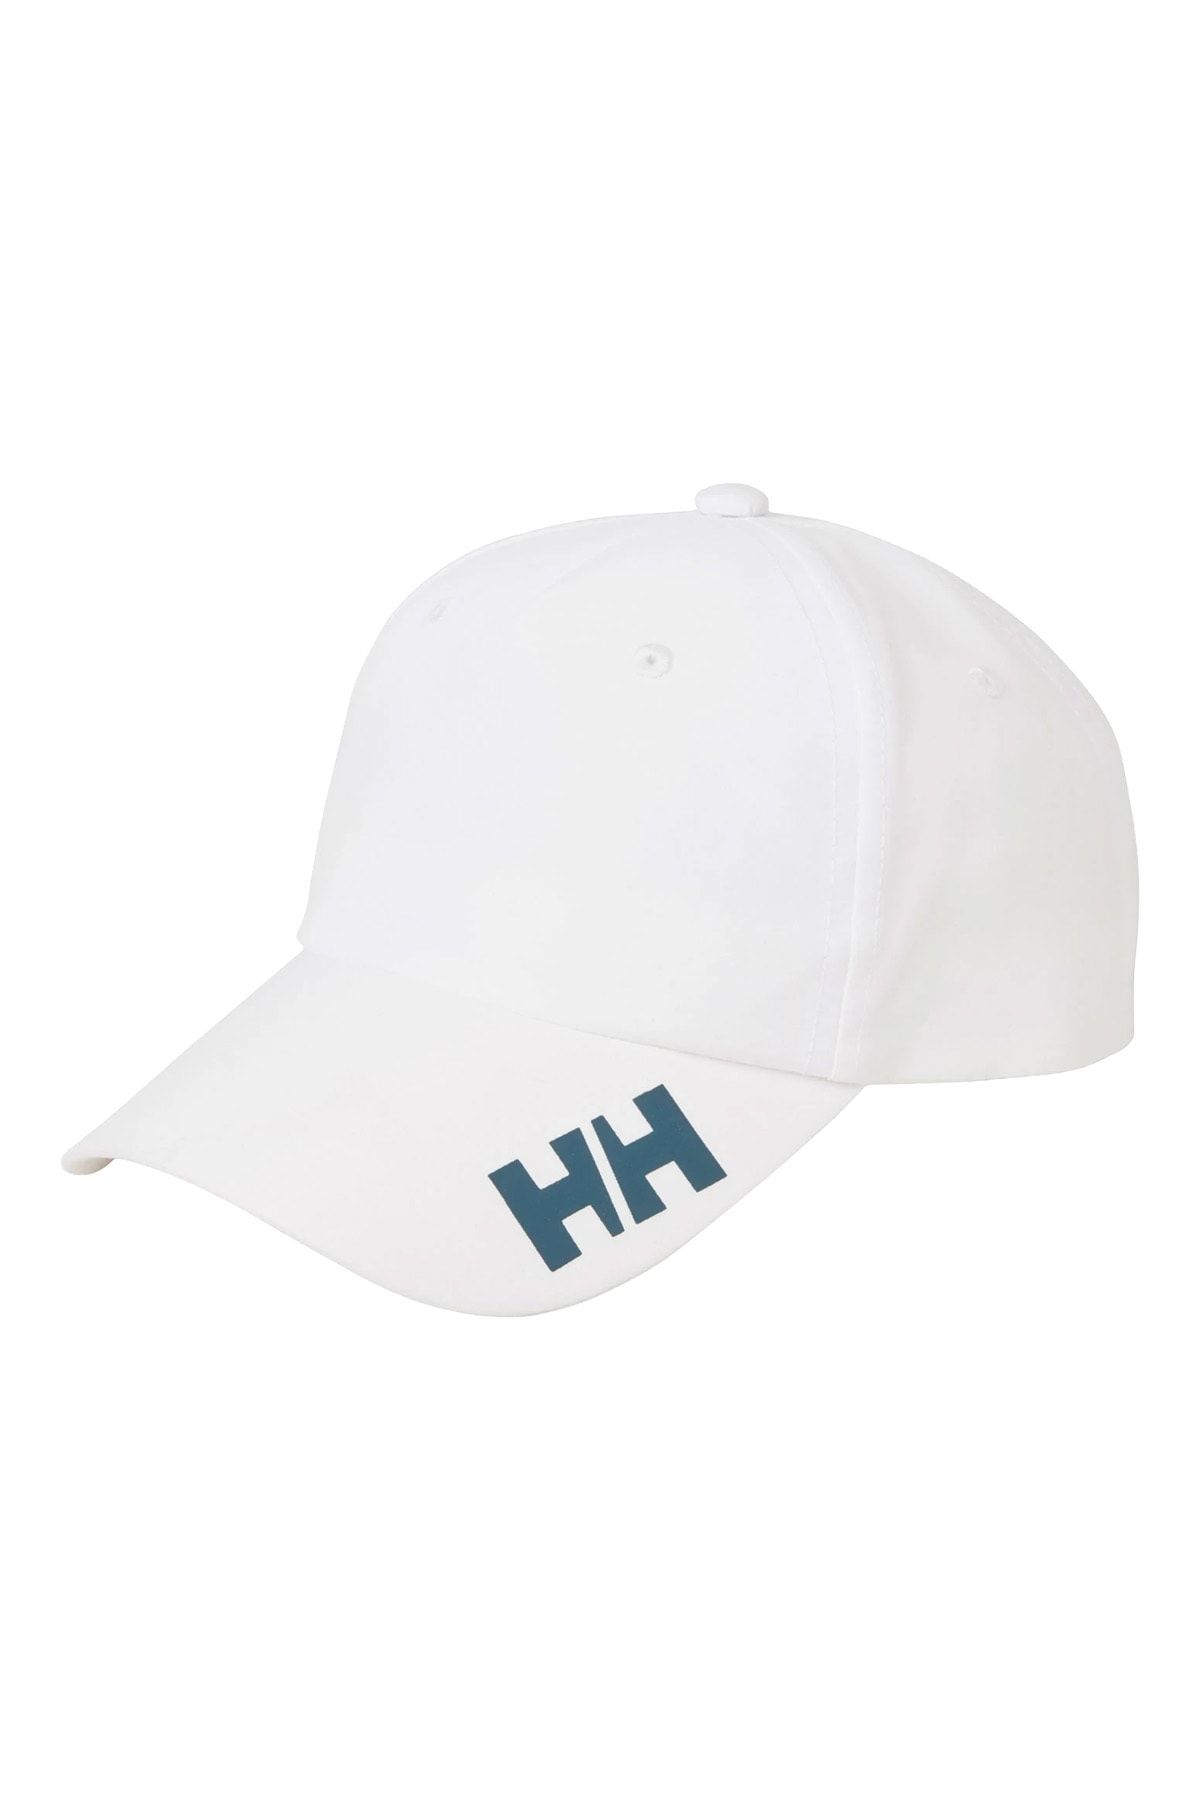 Helly Hansen Crew Kep Şapka Unisex Beyaz Şapka Hha.67160-hha.001